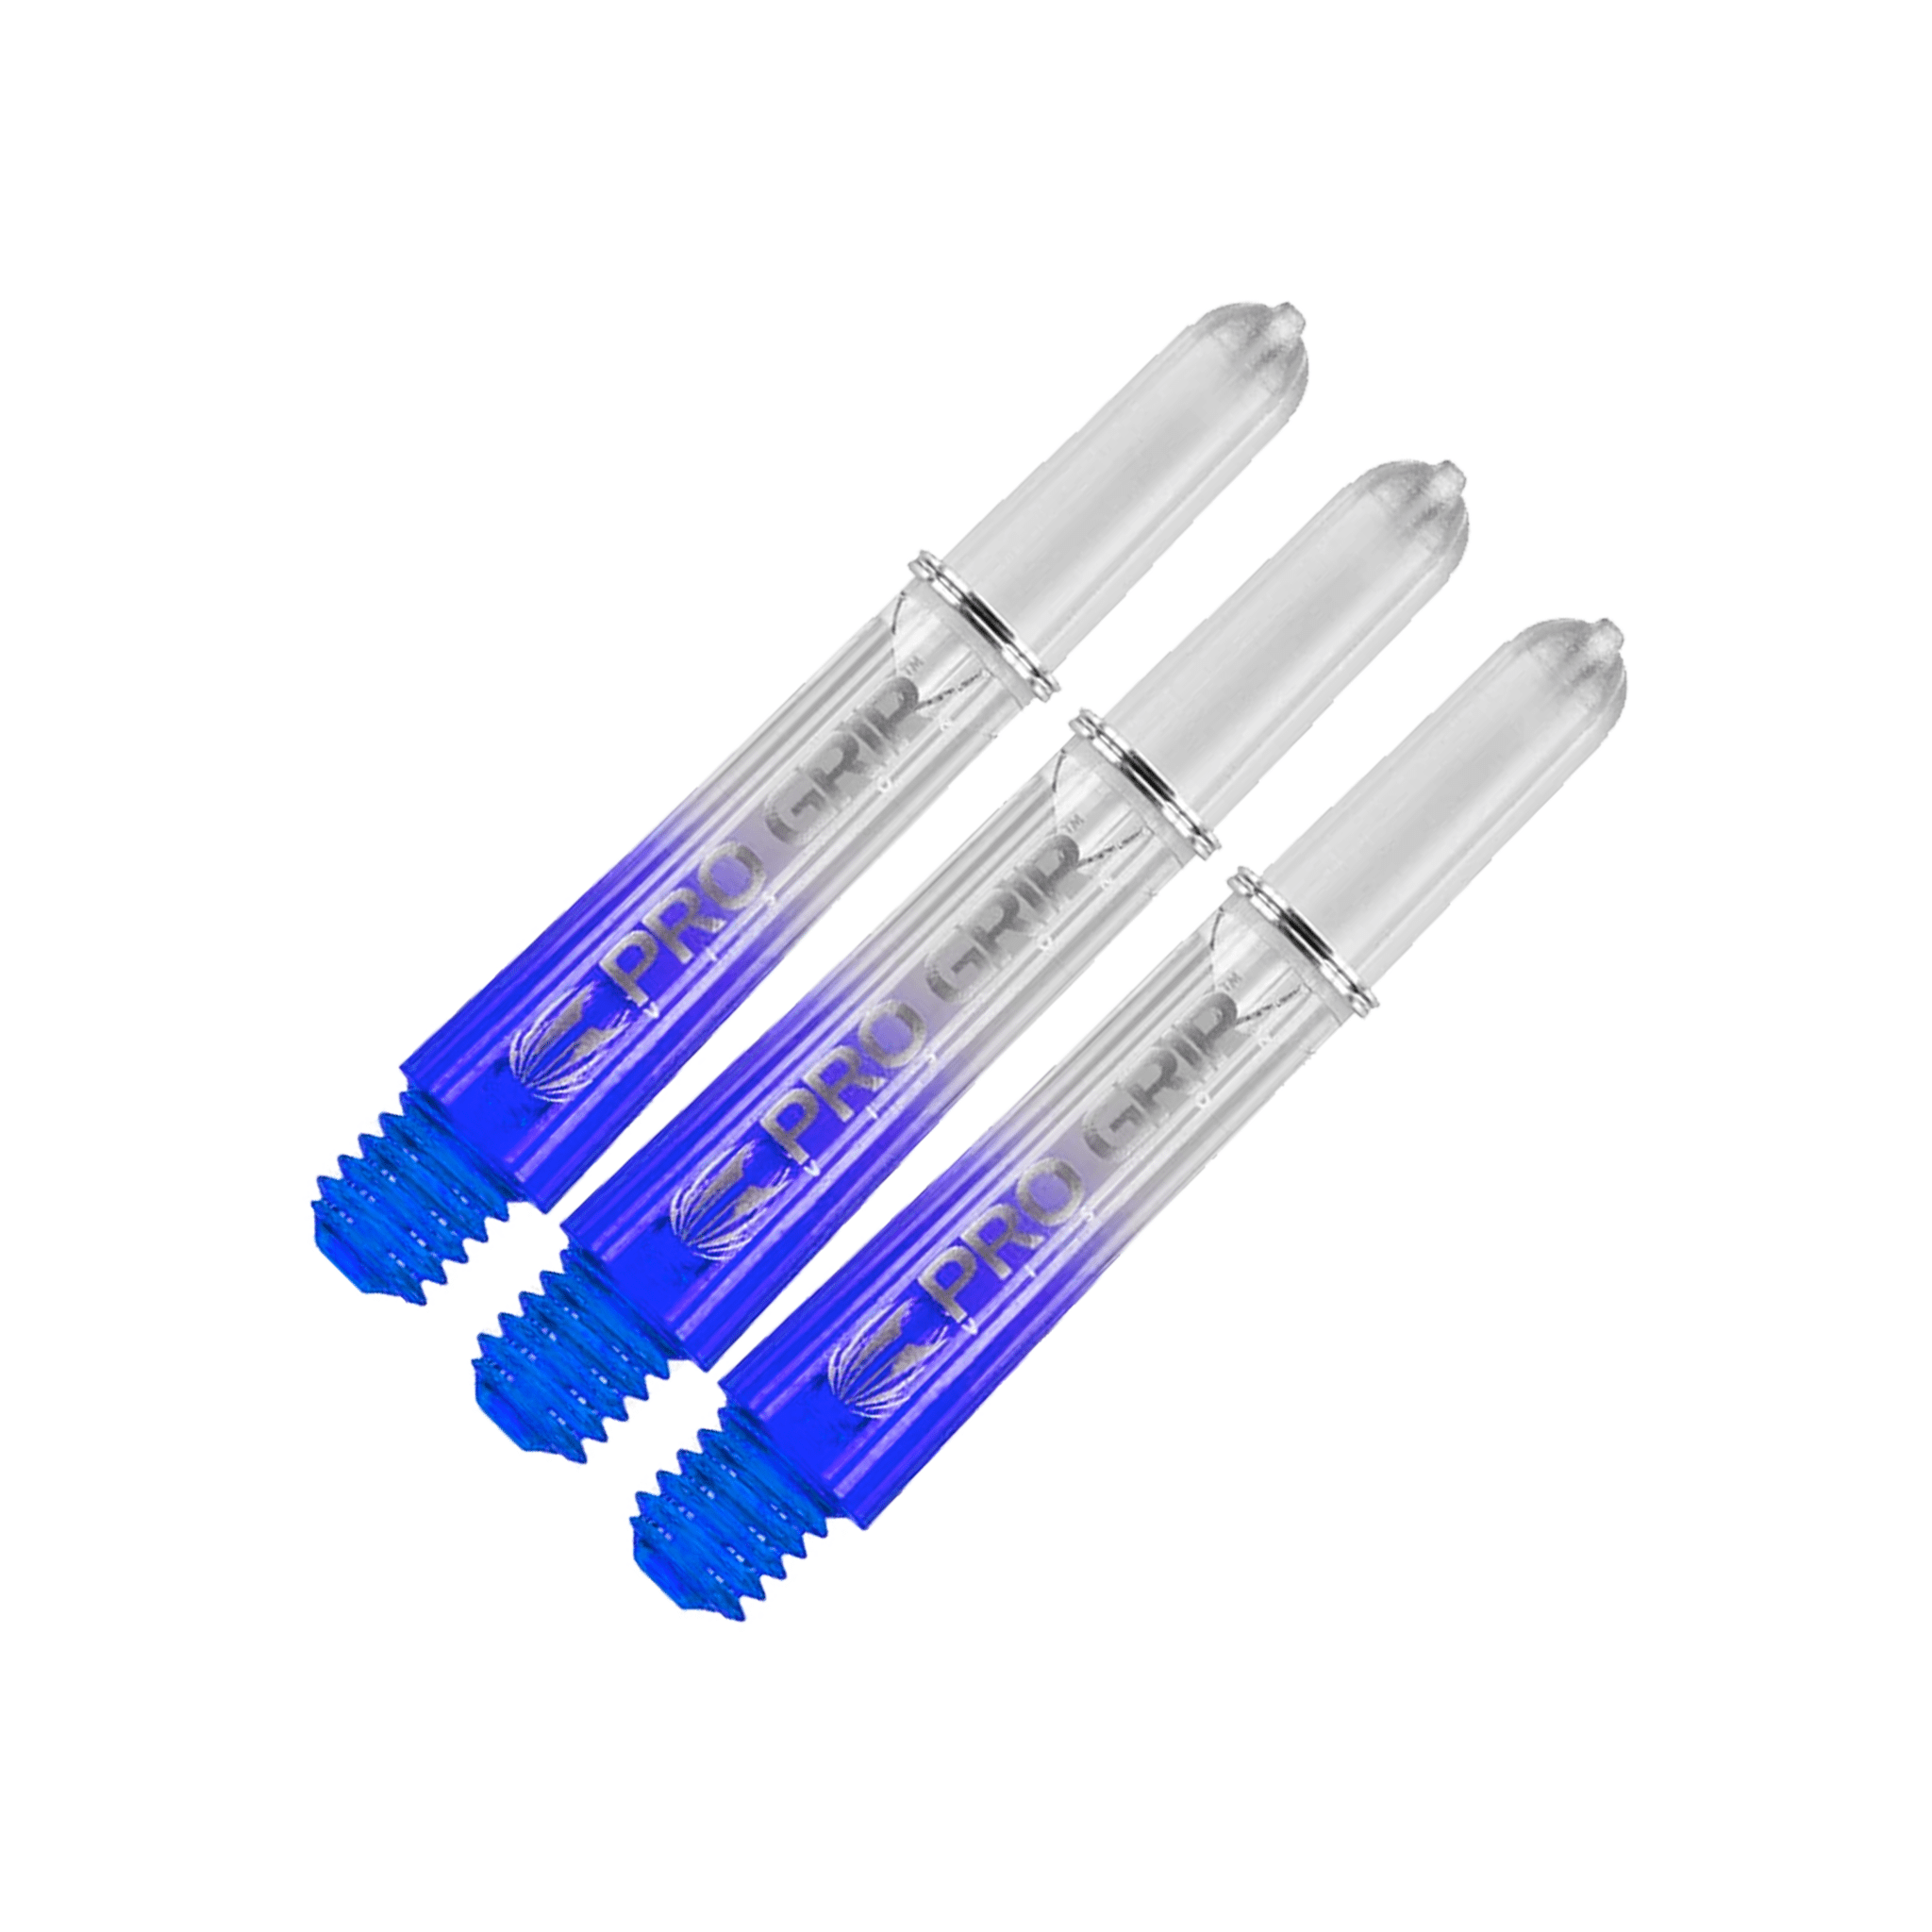 Target Pro Vision Short (34mm) Polycarbonate Dart Shafts Blue Shafts